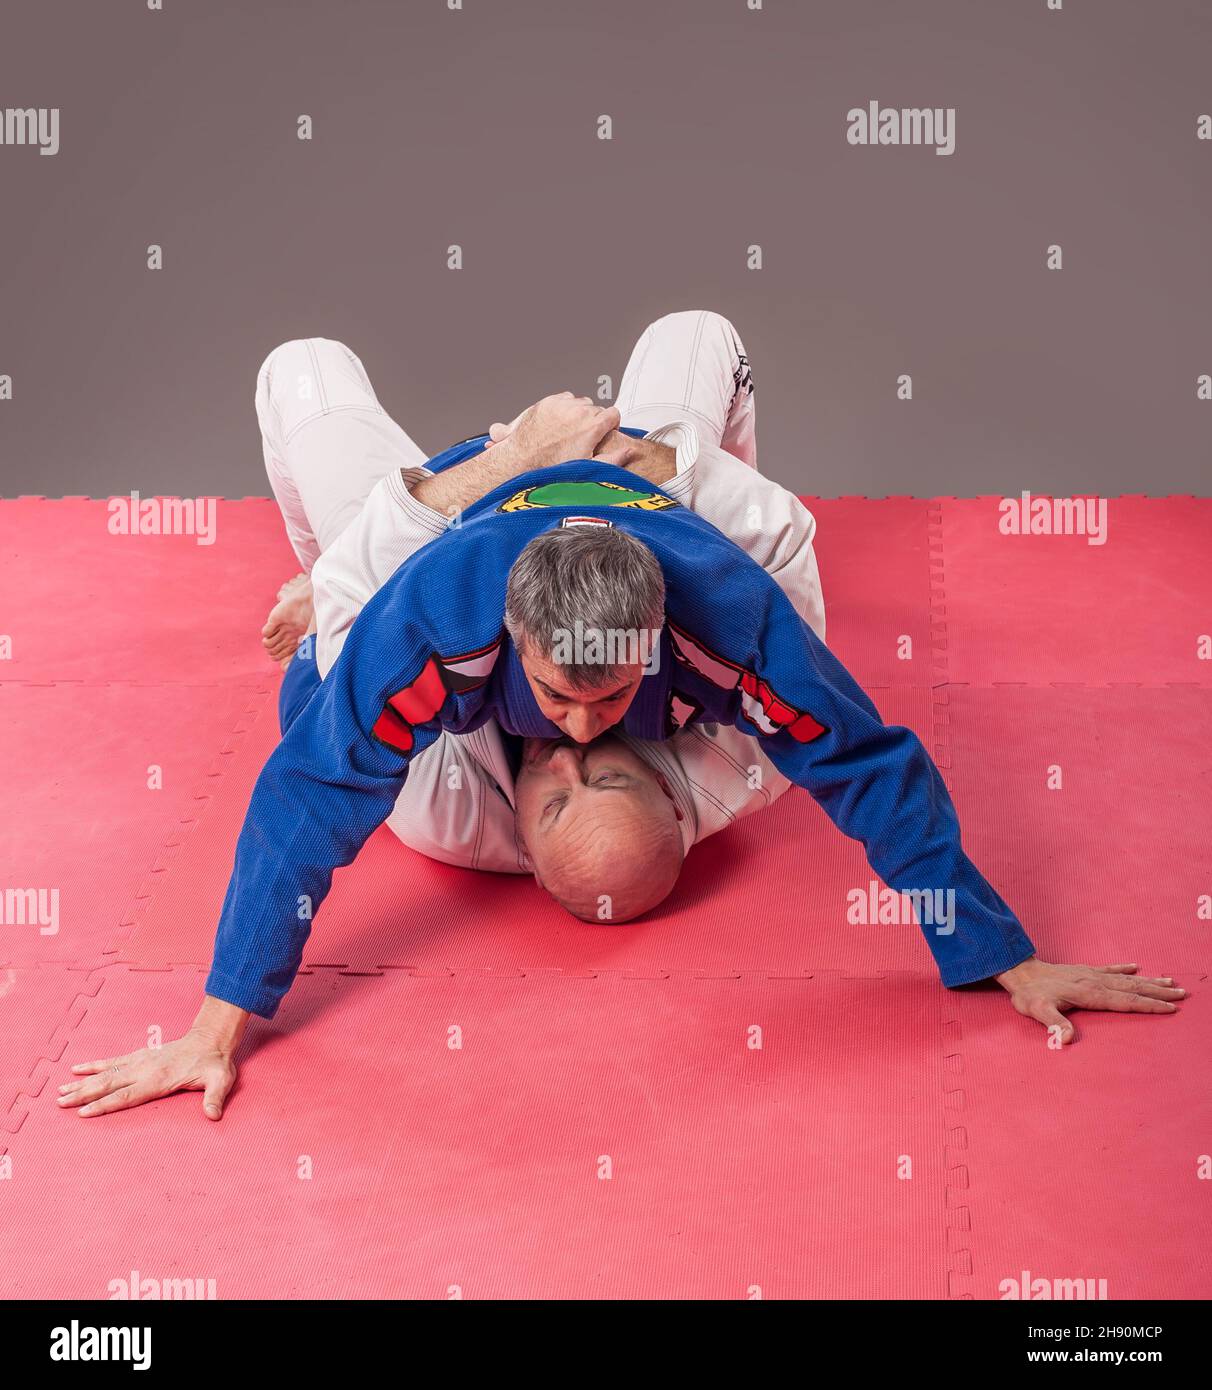 Kapap e il brasiliano jiu-jitsu istruttore in kimono tradizionale mostra posizione di montaggio a terra Foto Stock